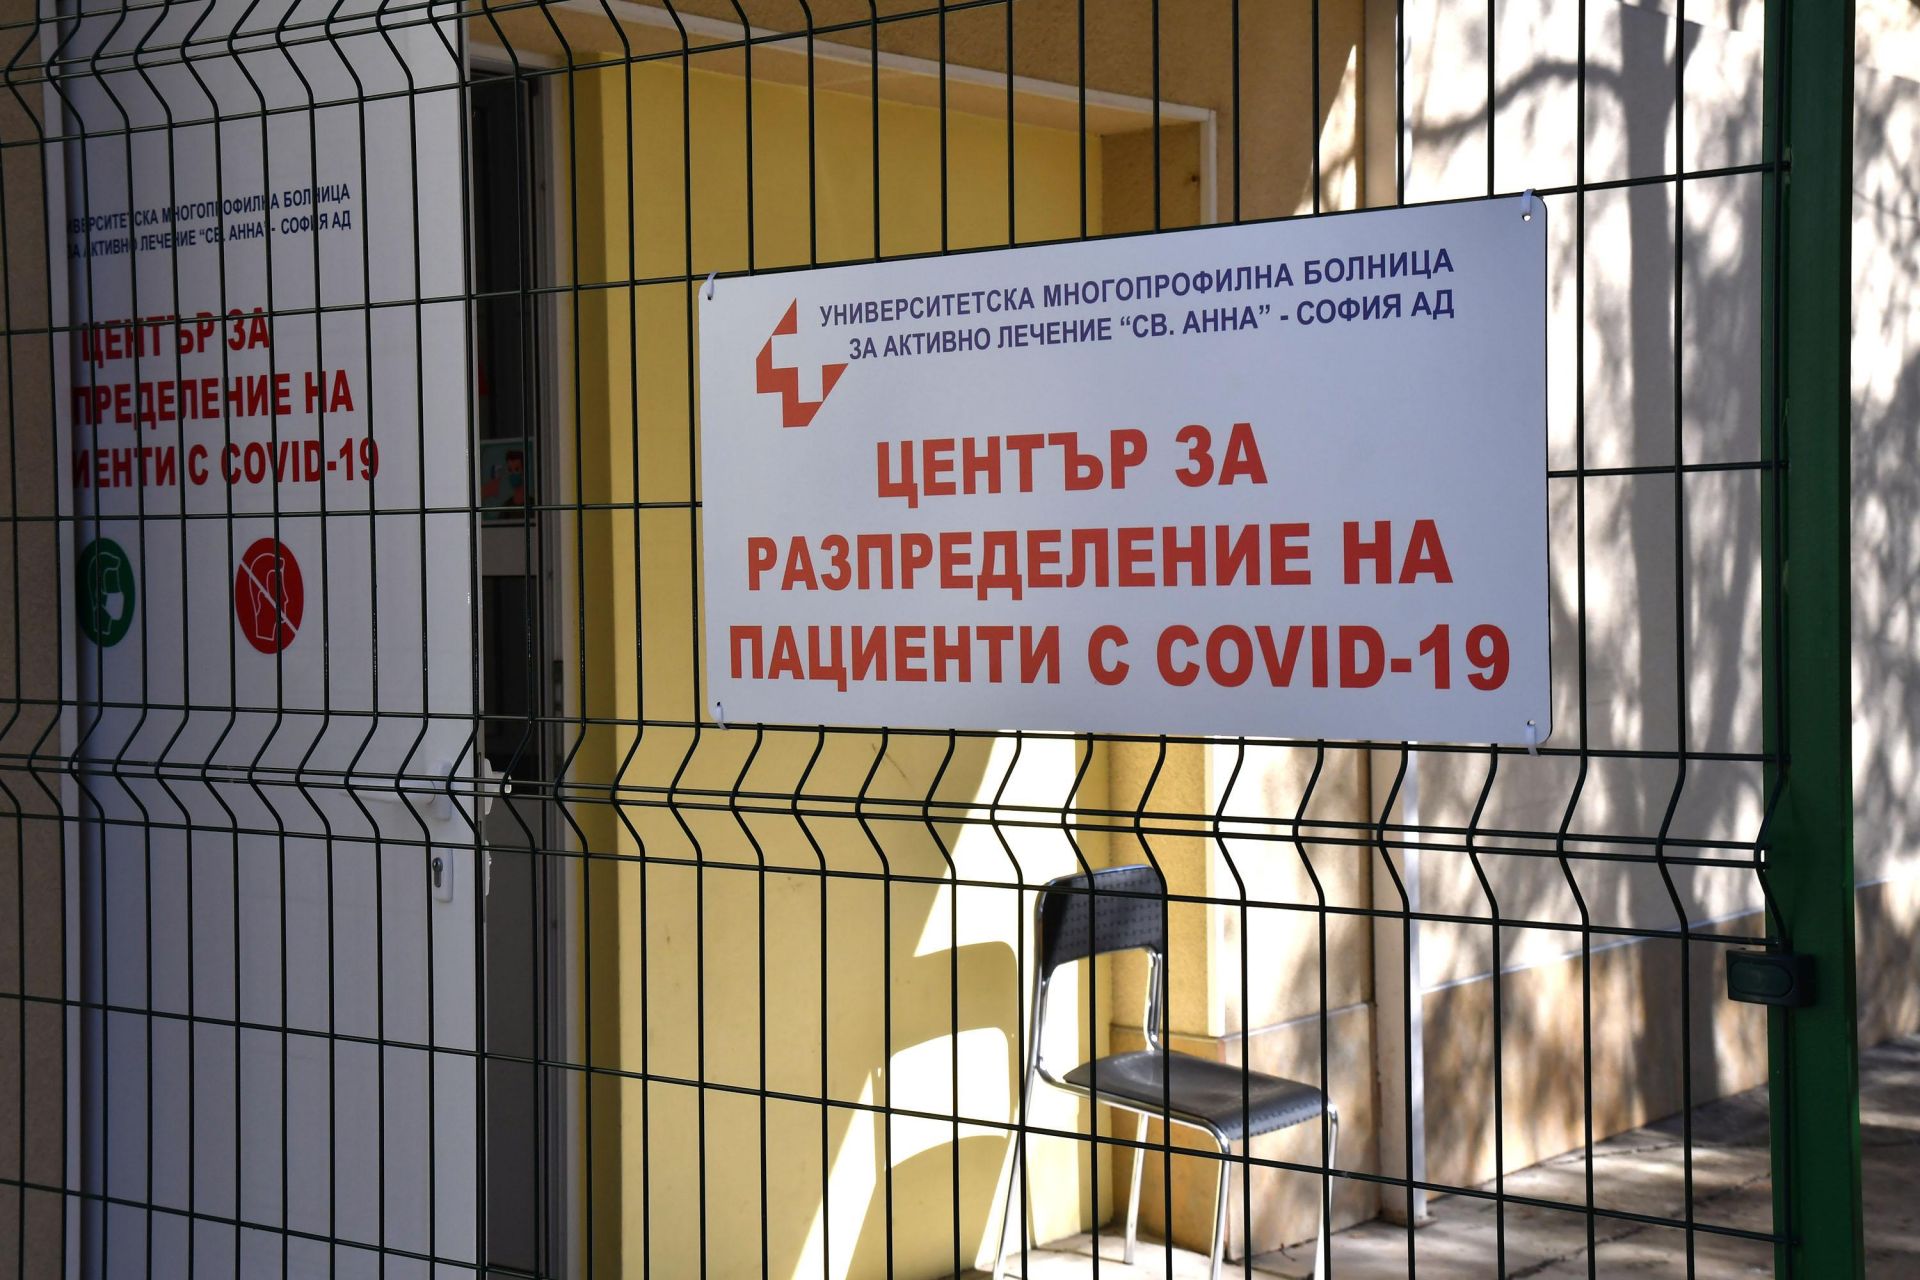 Новосъздаденият пункт за триаж на пациенти и тестване за COVID-19 в столичната УМБАЛ "Св. Анна" 